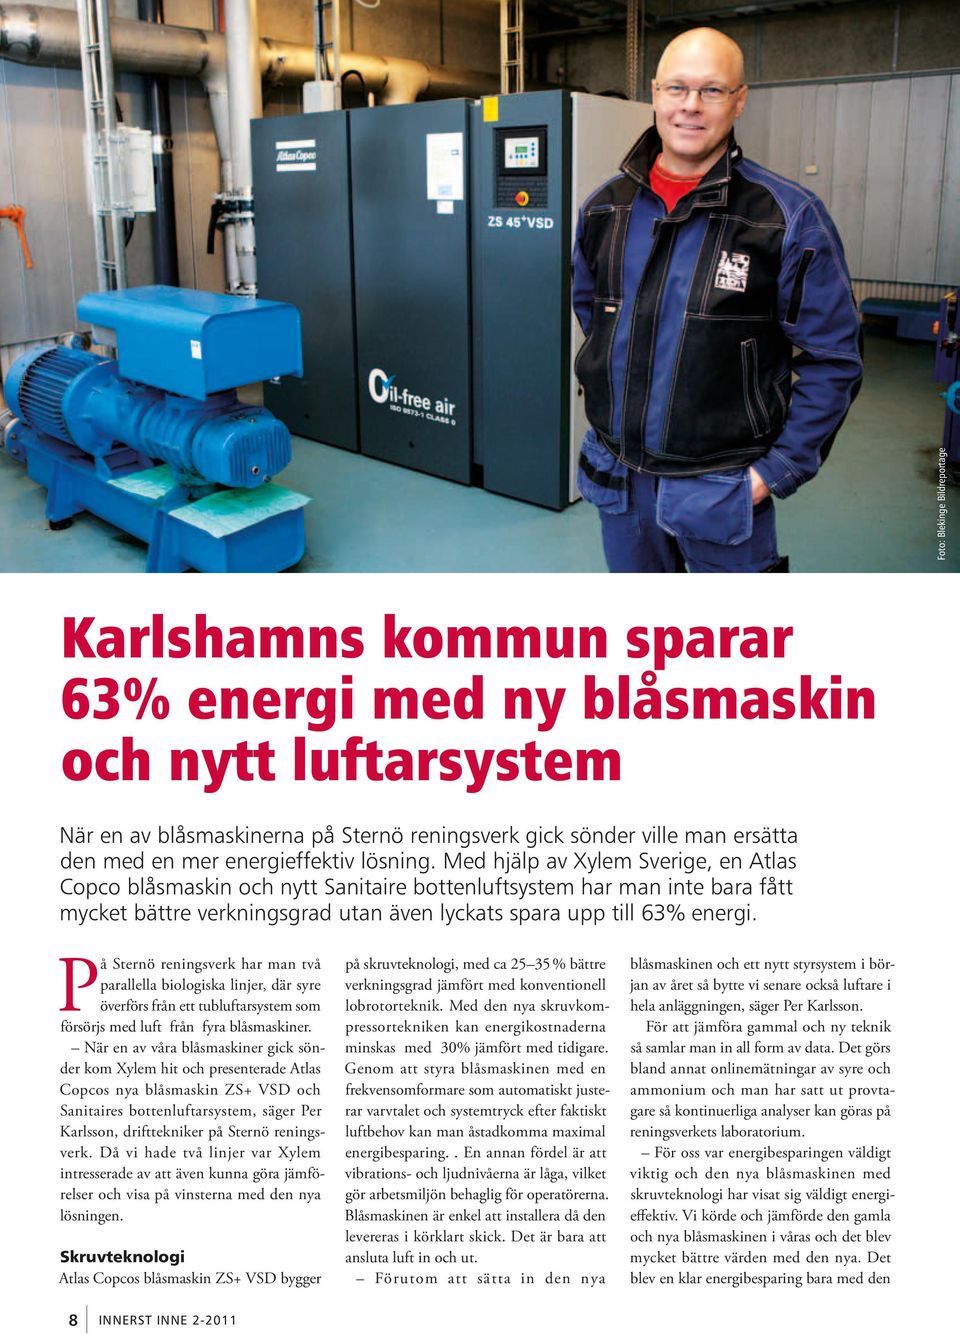 Med hjälp av Xylem Sverige, en Atlas Copco blåsmaskin och nytt Sanitaire bottenluftsystem har man inte bara fått mycket bättre verkningsgrad utan även lyckats spara upp till 63% energi.